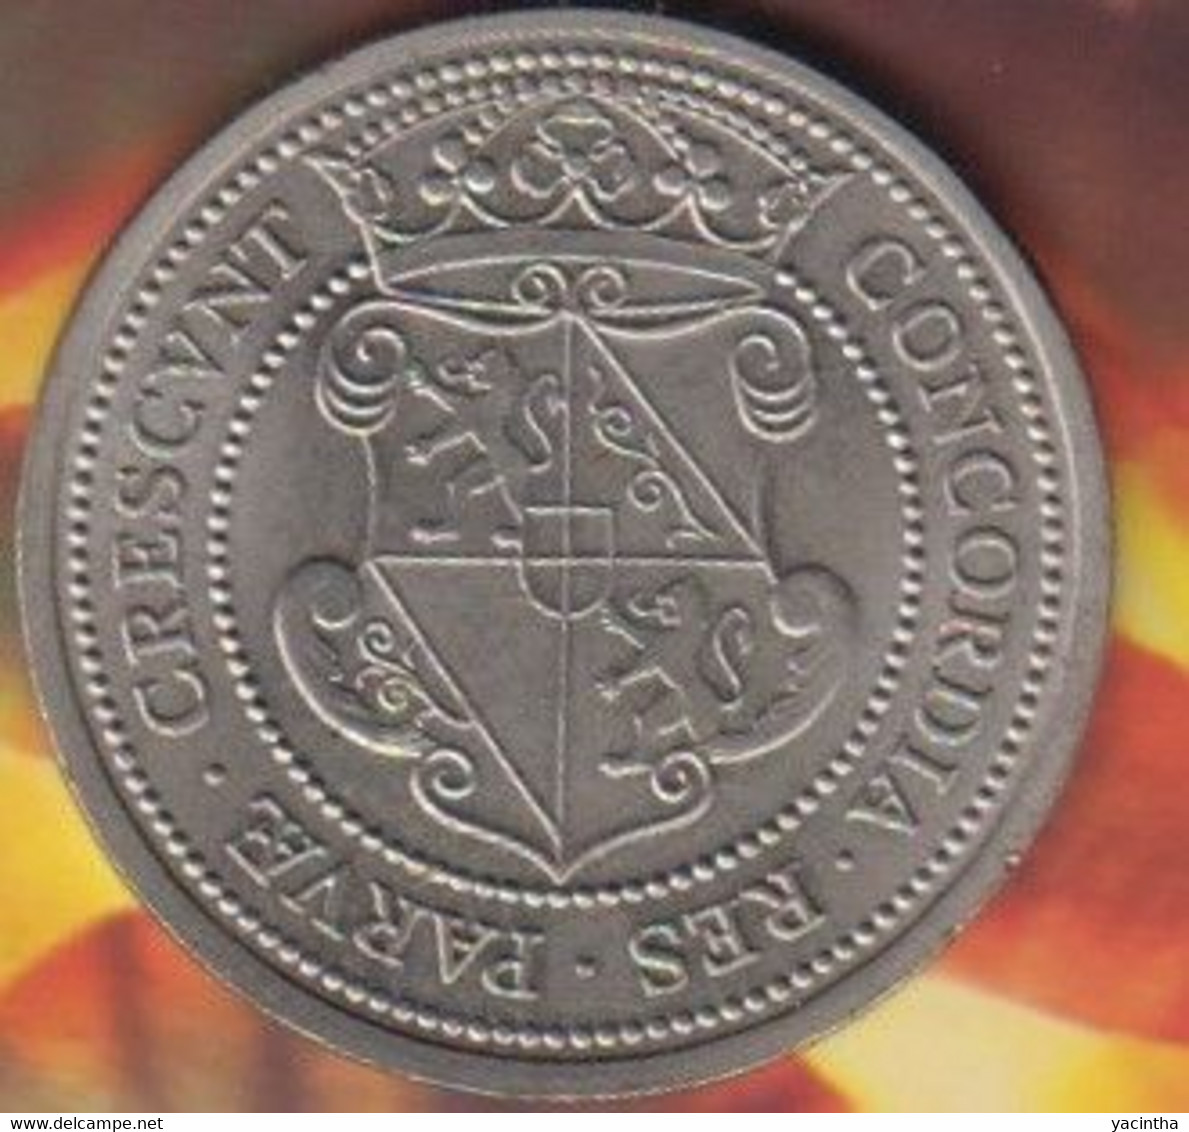 1 Unie Daalder  . Unie Van Utrecht  1979      (1008) - Pièces écrasées (Elongated Coins)